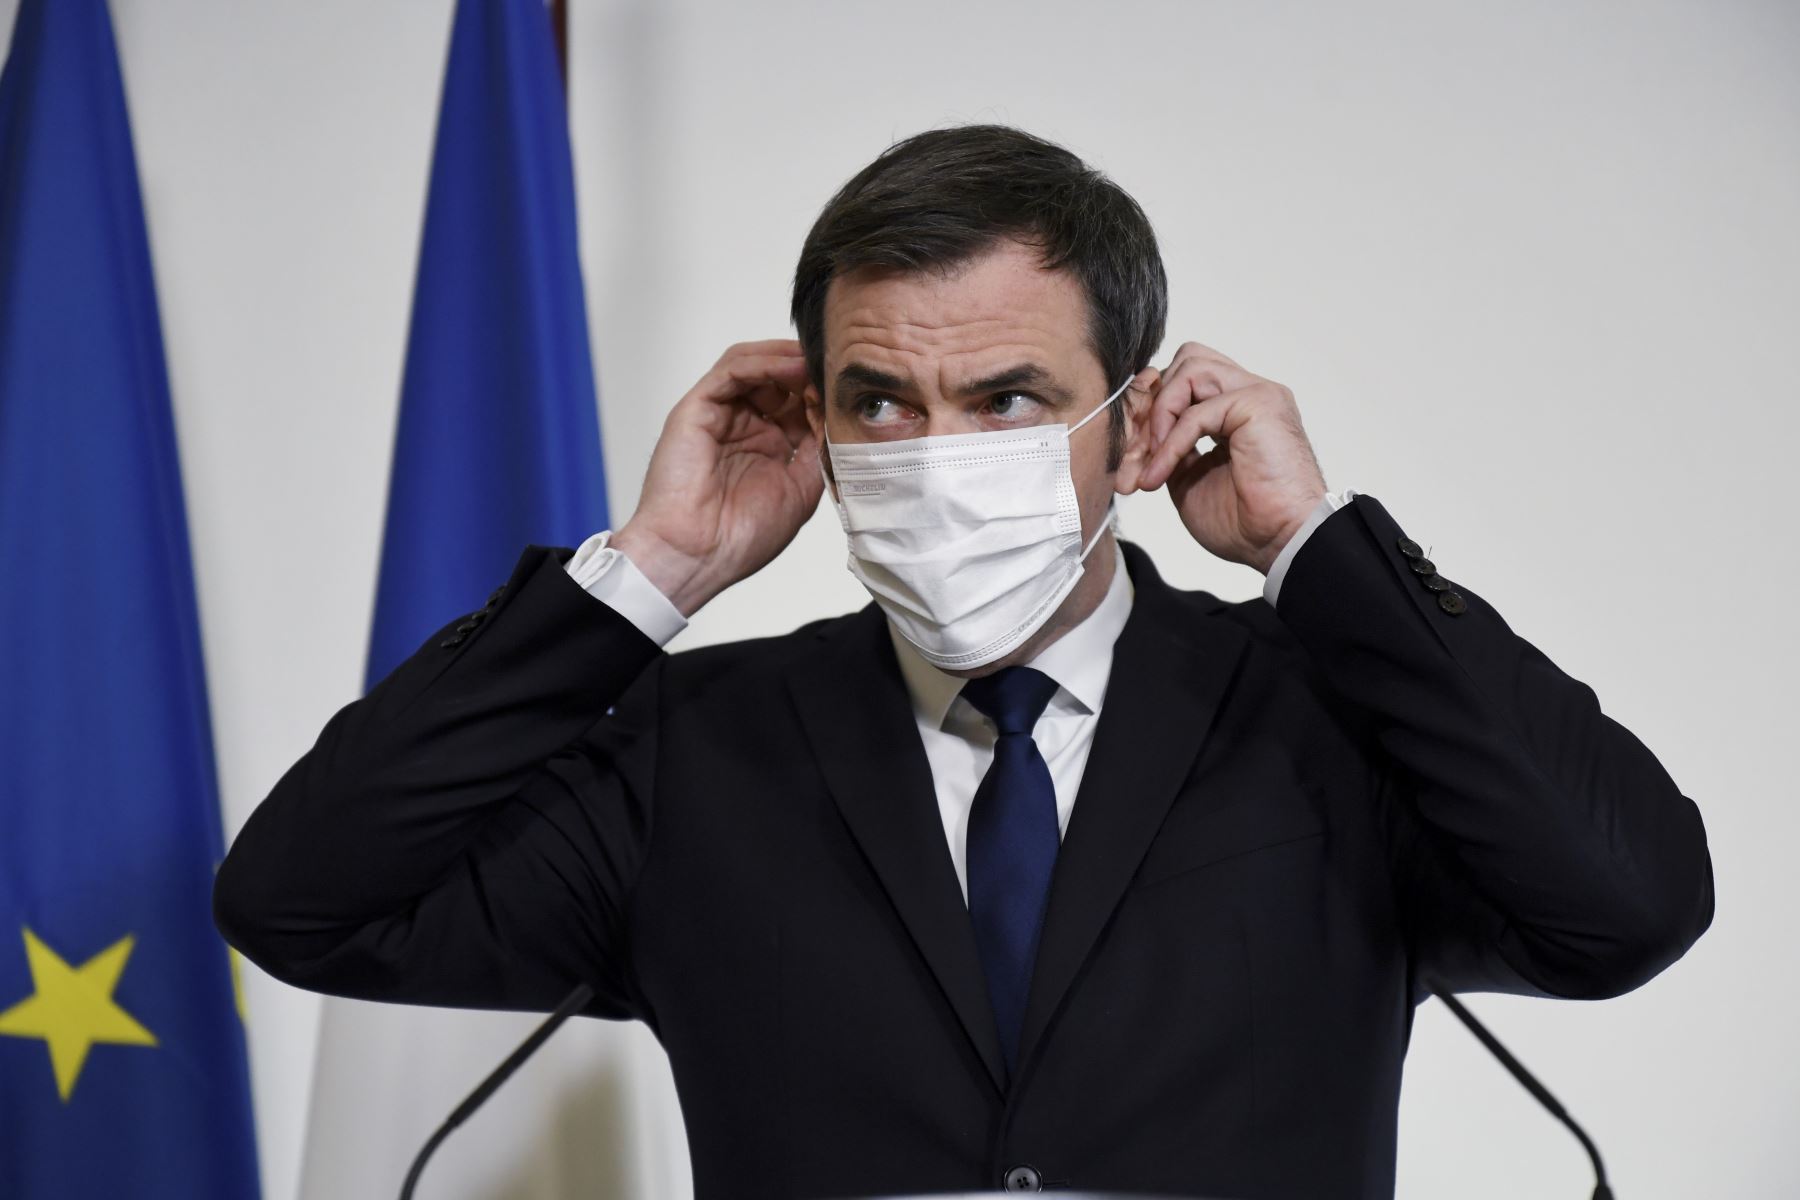 El ministro de Salud francés, Olivier Veran, ajusta su mascarilla protectora durante una conferencia de prensa sobre el límite de tiempo para la inyección de la segunda dosis de la vacuna Pfizer / BioNTech COVID-19 en París. Foto: AFP